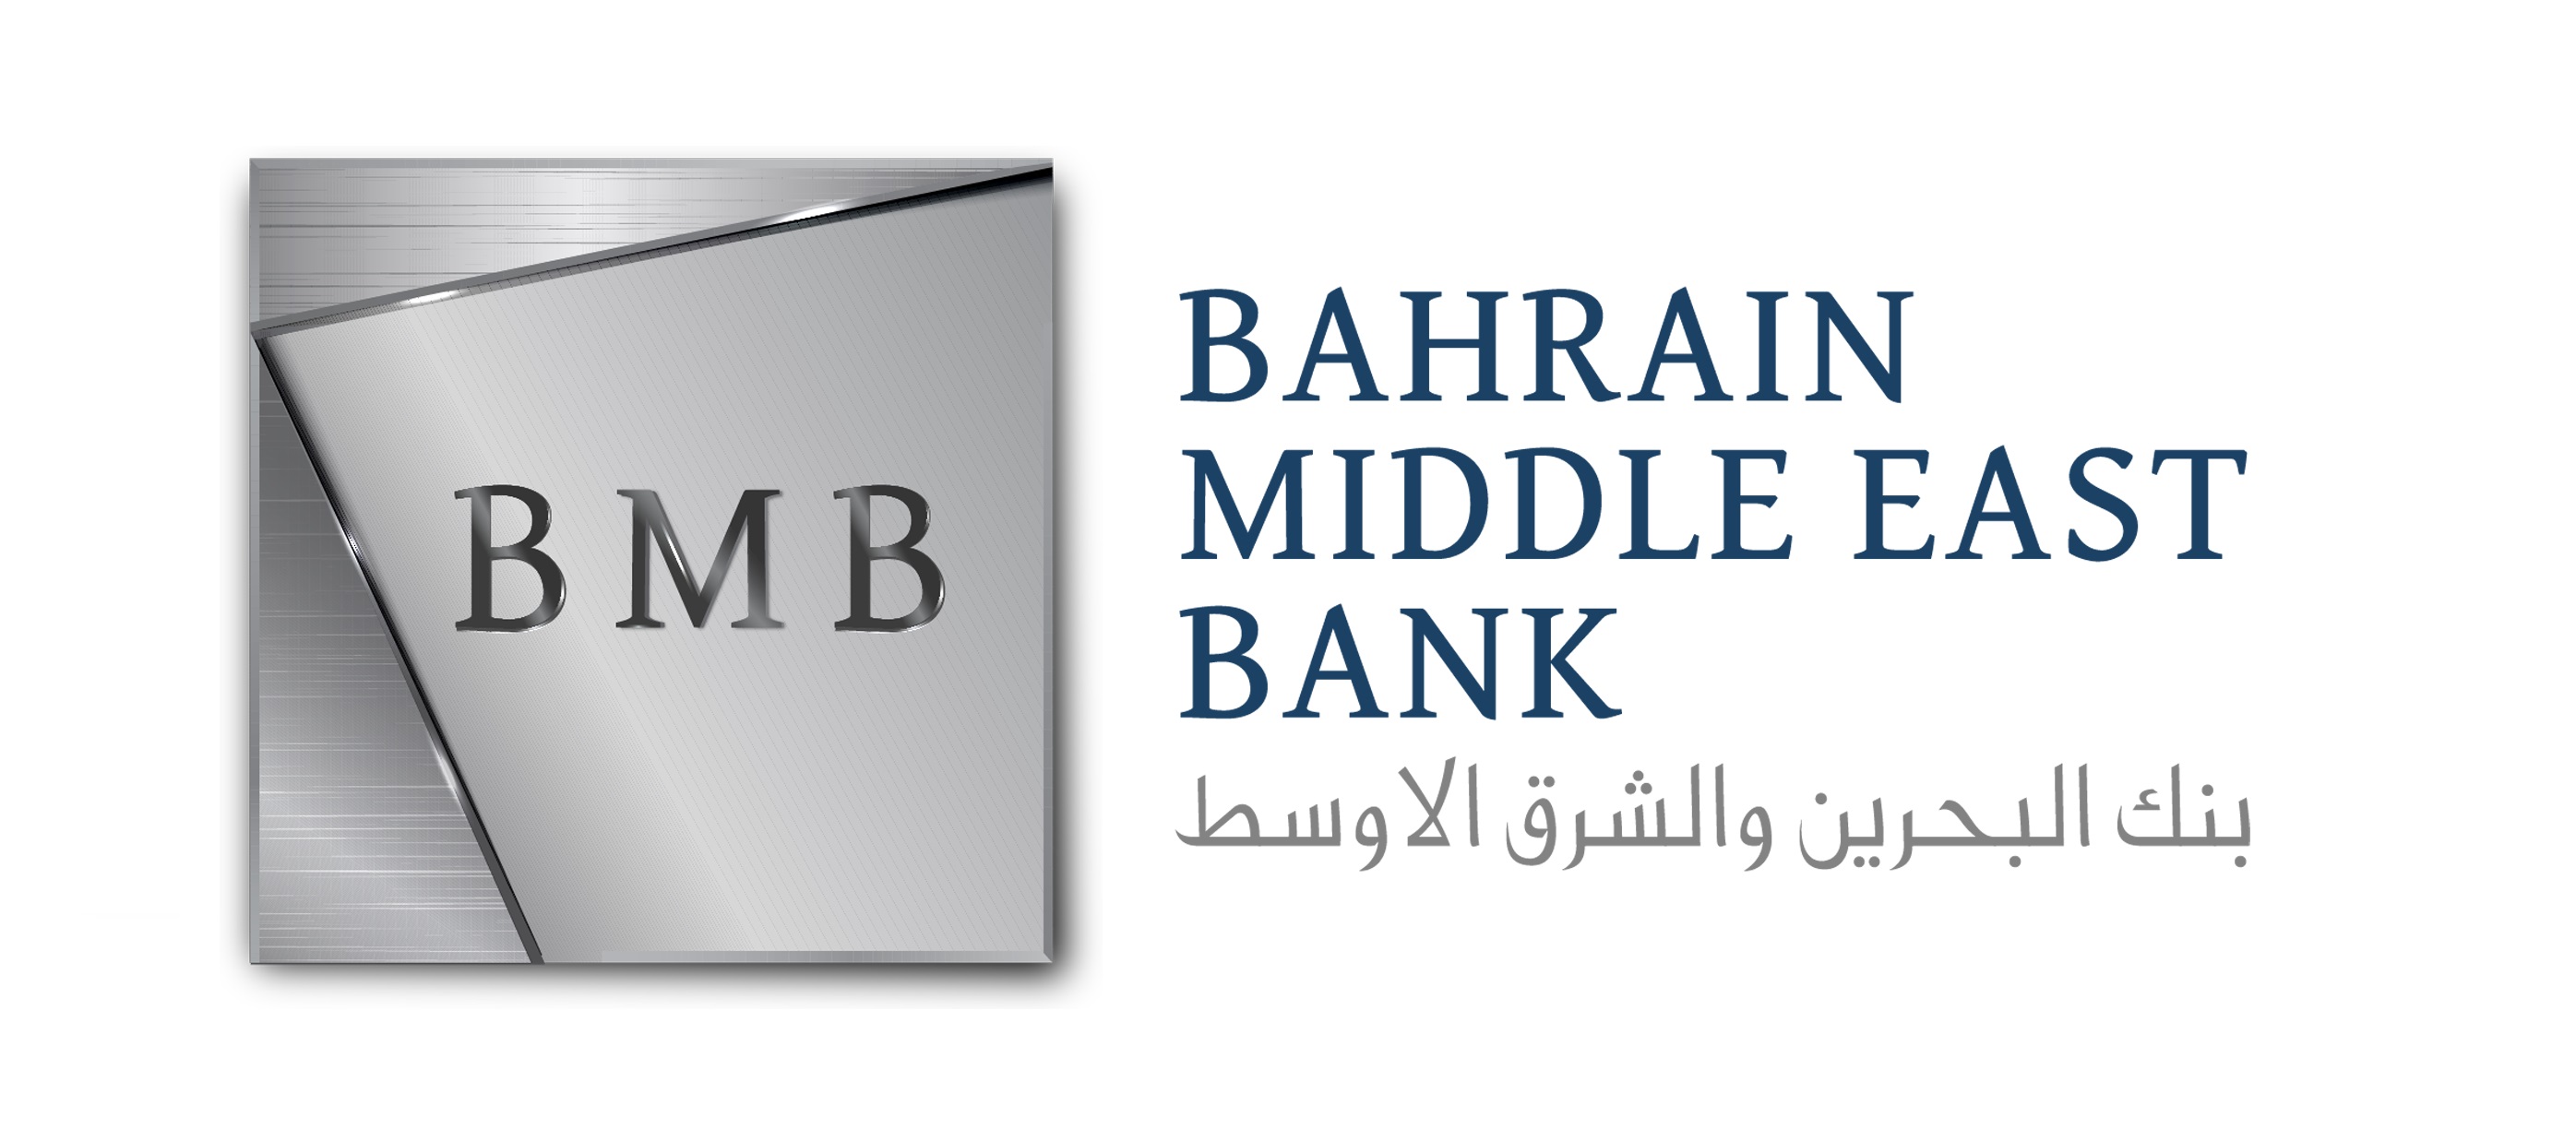 جيه سي آر أوراسيا تمنح بنك البحرين والشرق الأوسط تصنيفاً ائتمانياً وطنياً طويل الأجل 